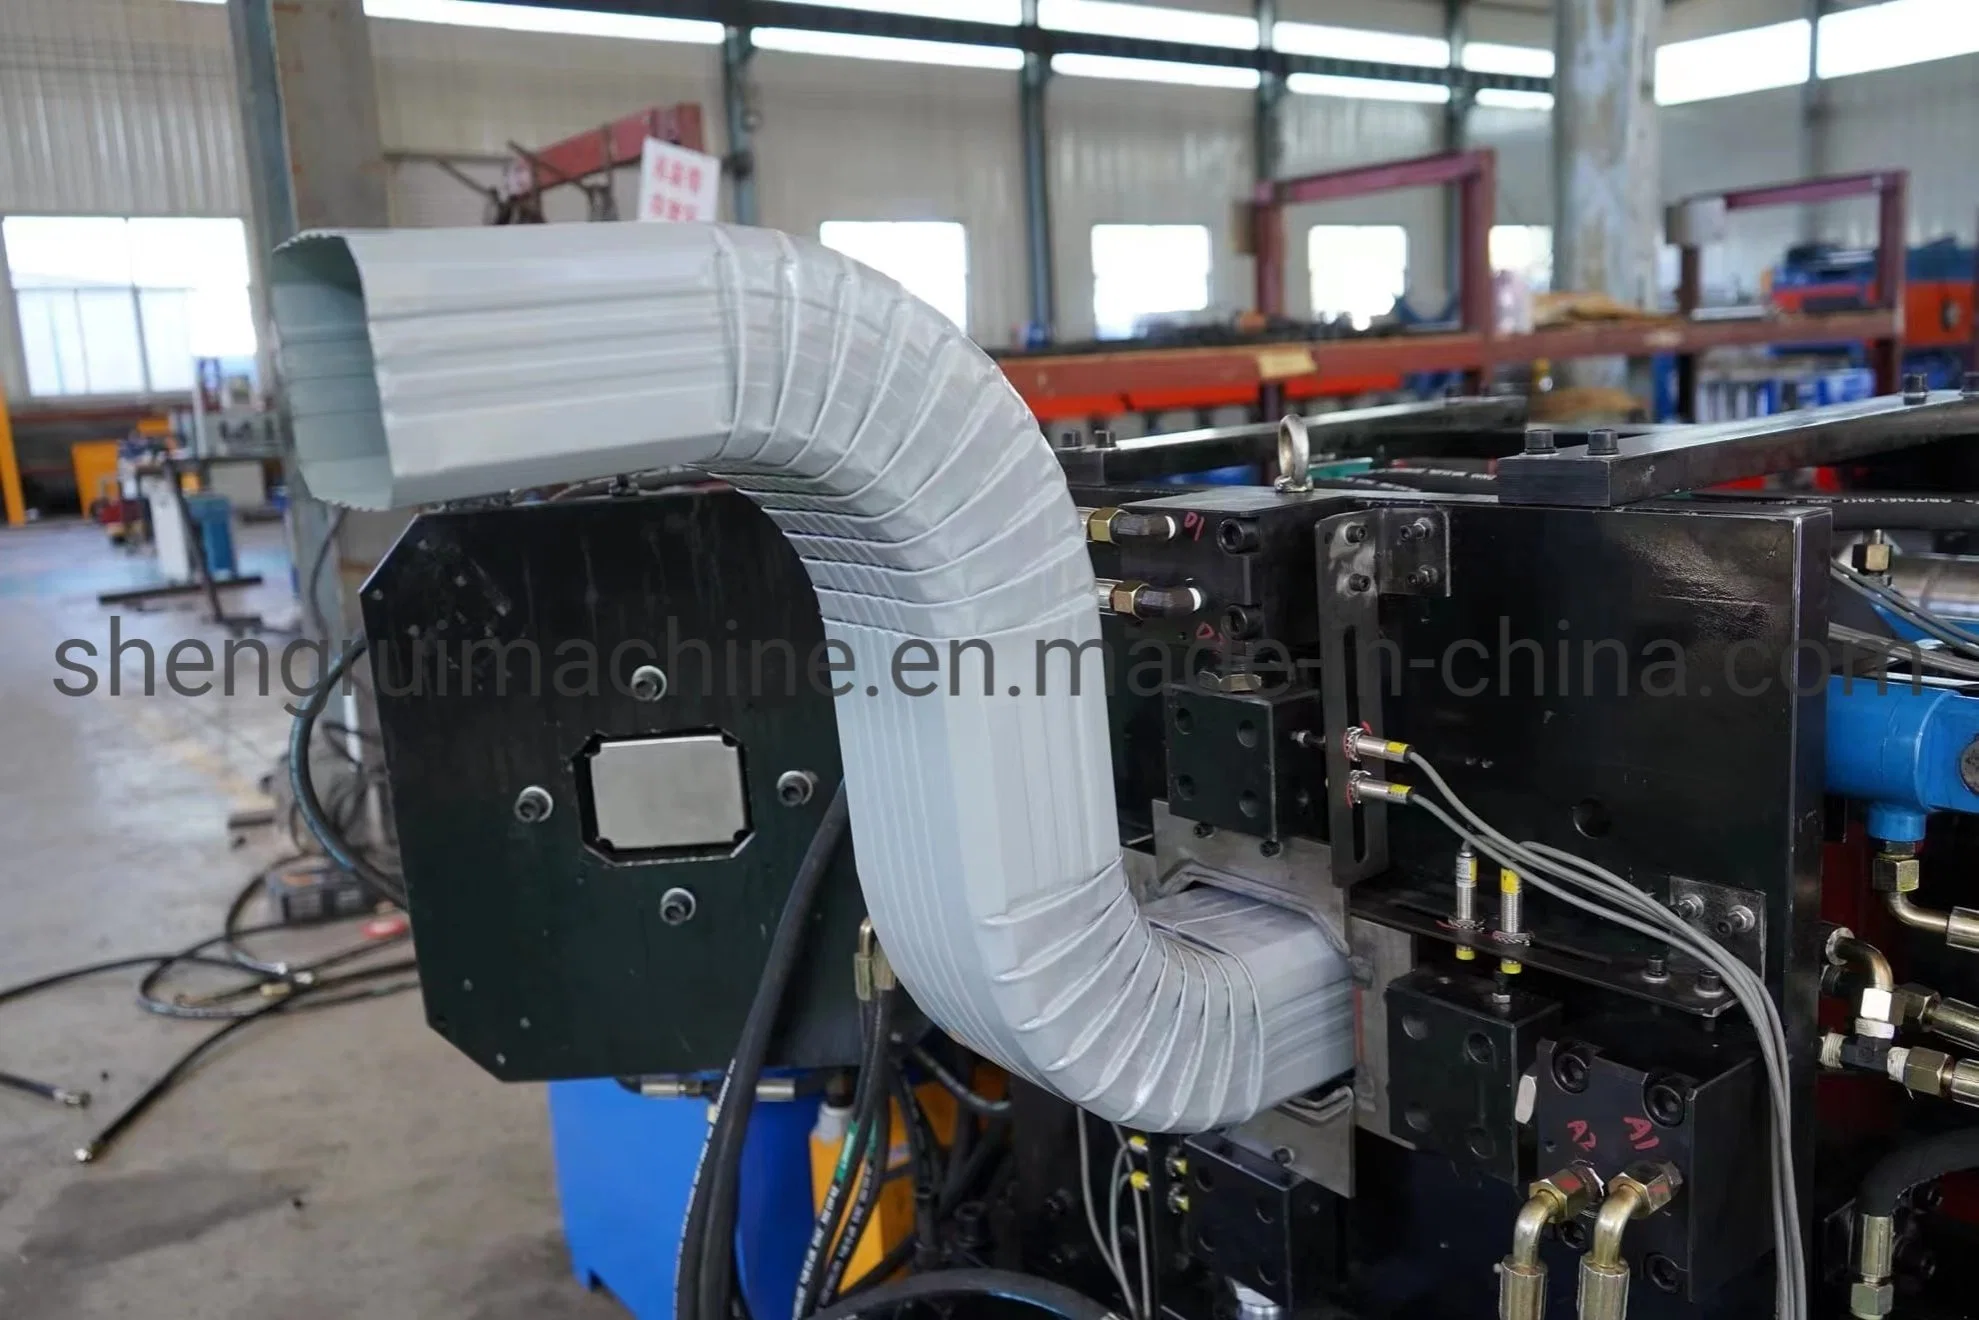 Machine de formage de tuyaux d'eau du fournisseur chinois en vente chaude Machine de roulage de tuyaux de descente